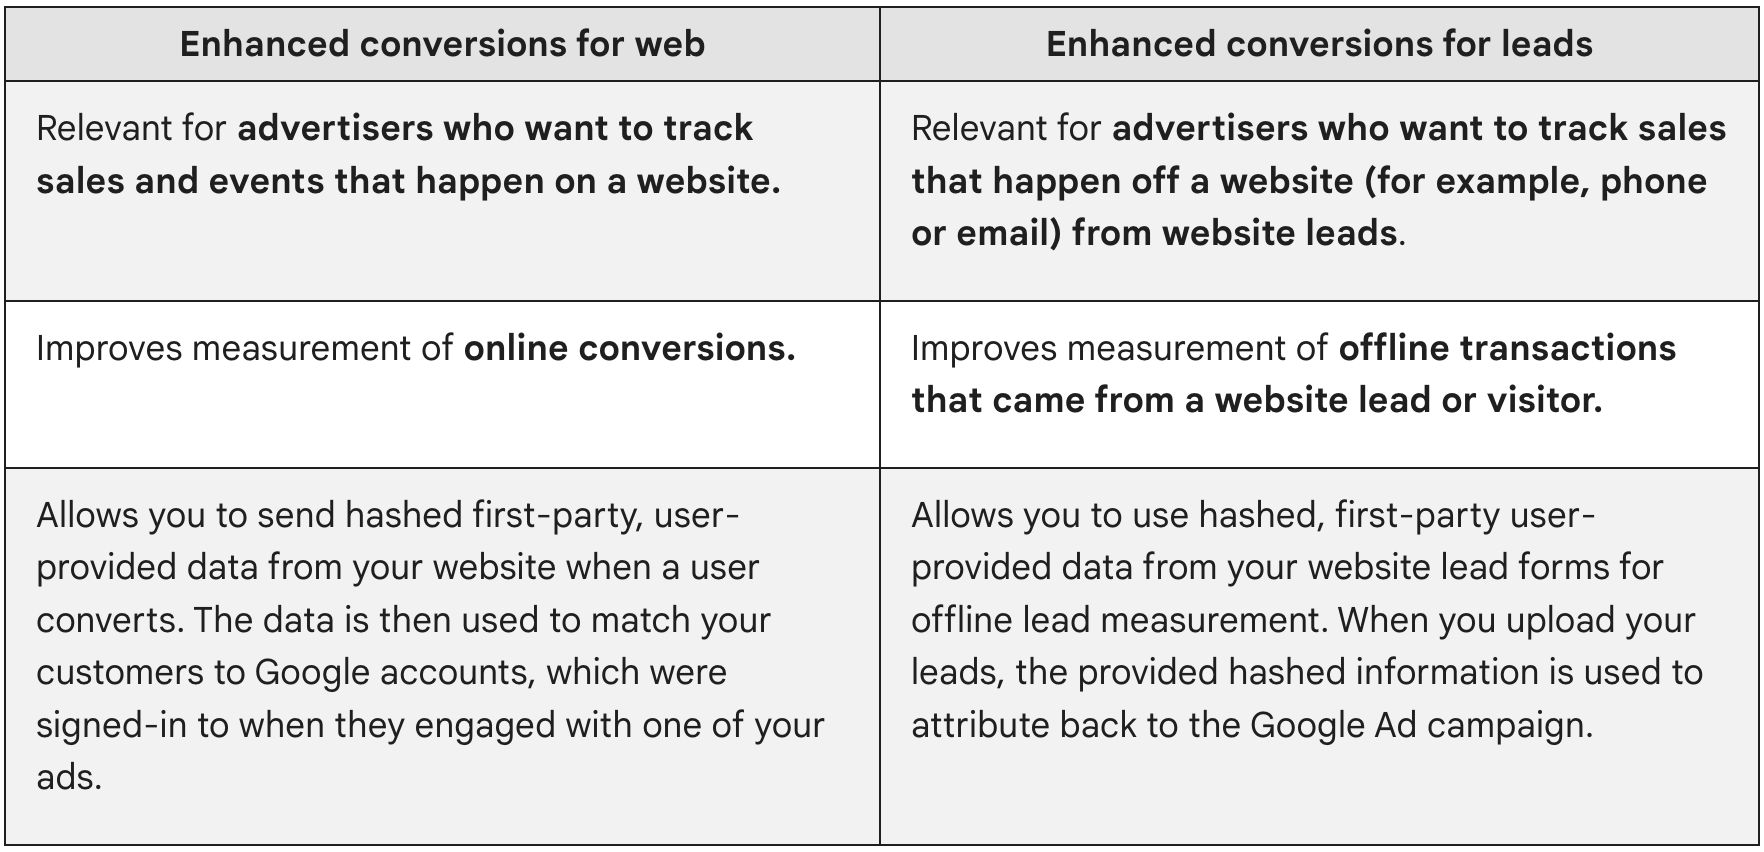 Erweiterte Conversions für das Web sind für Werbetreibende relevant, die Verkäufe und Ereignisse auf einer Website erfassen möchten. Erweiterte Conversions für Leads sind für Werbetreibende relevant, die Verkäufe erfassen möchten, die aus Website-Leads außerhalb einer Website erfolgen (z. B. telefonisch oder per E-Mail).